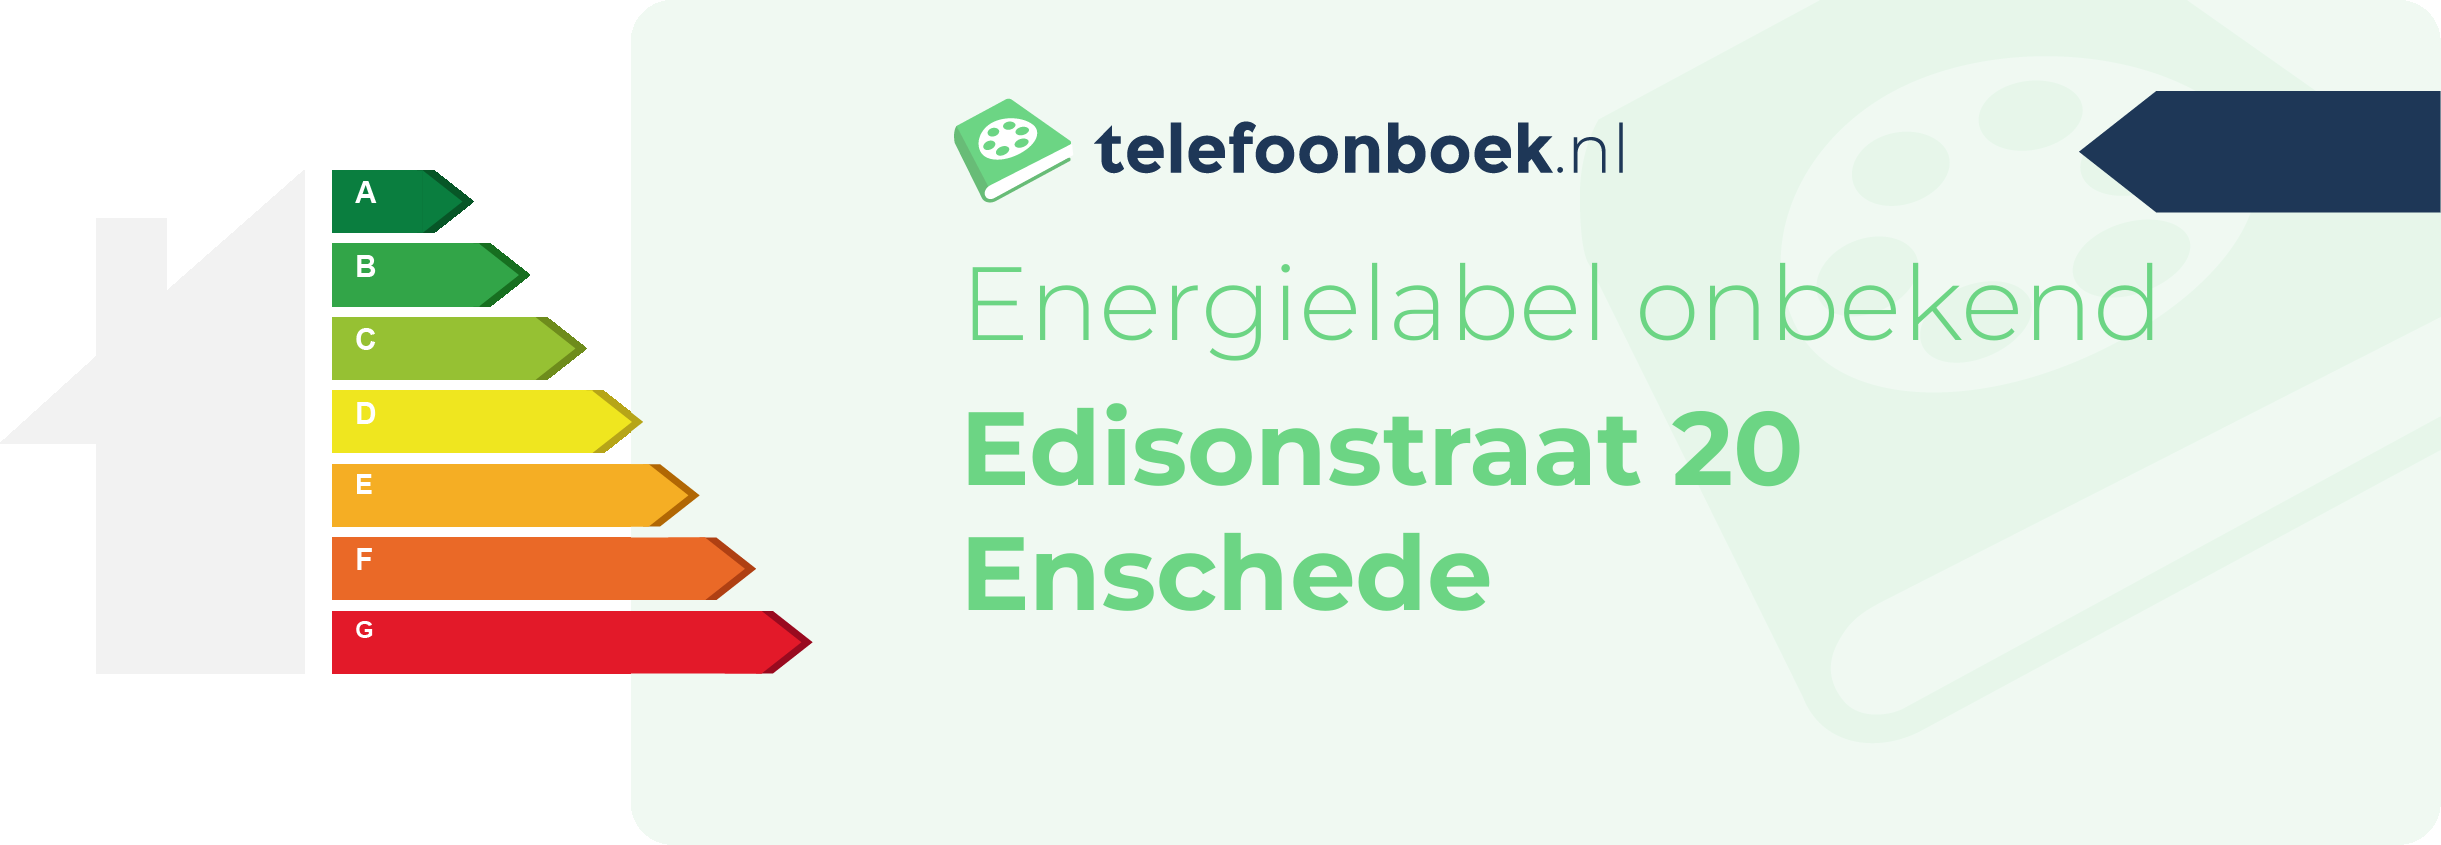 Energielabel Edisonstraat 20 Enschede